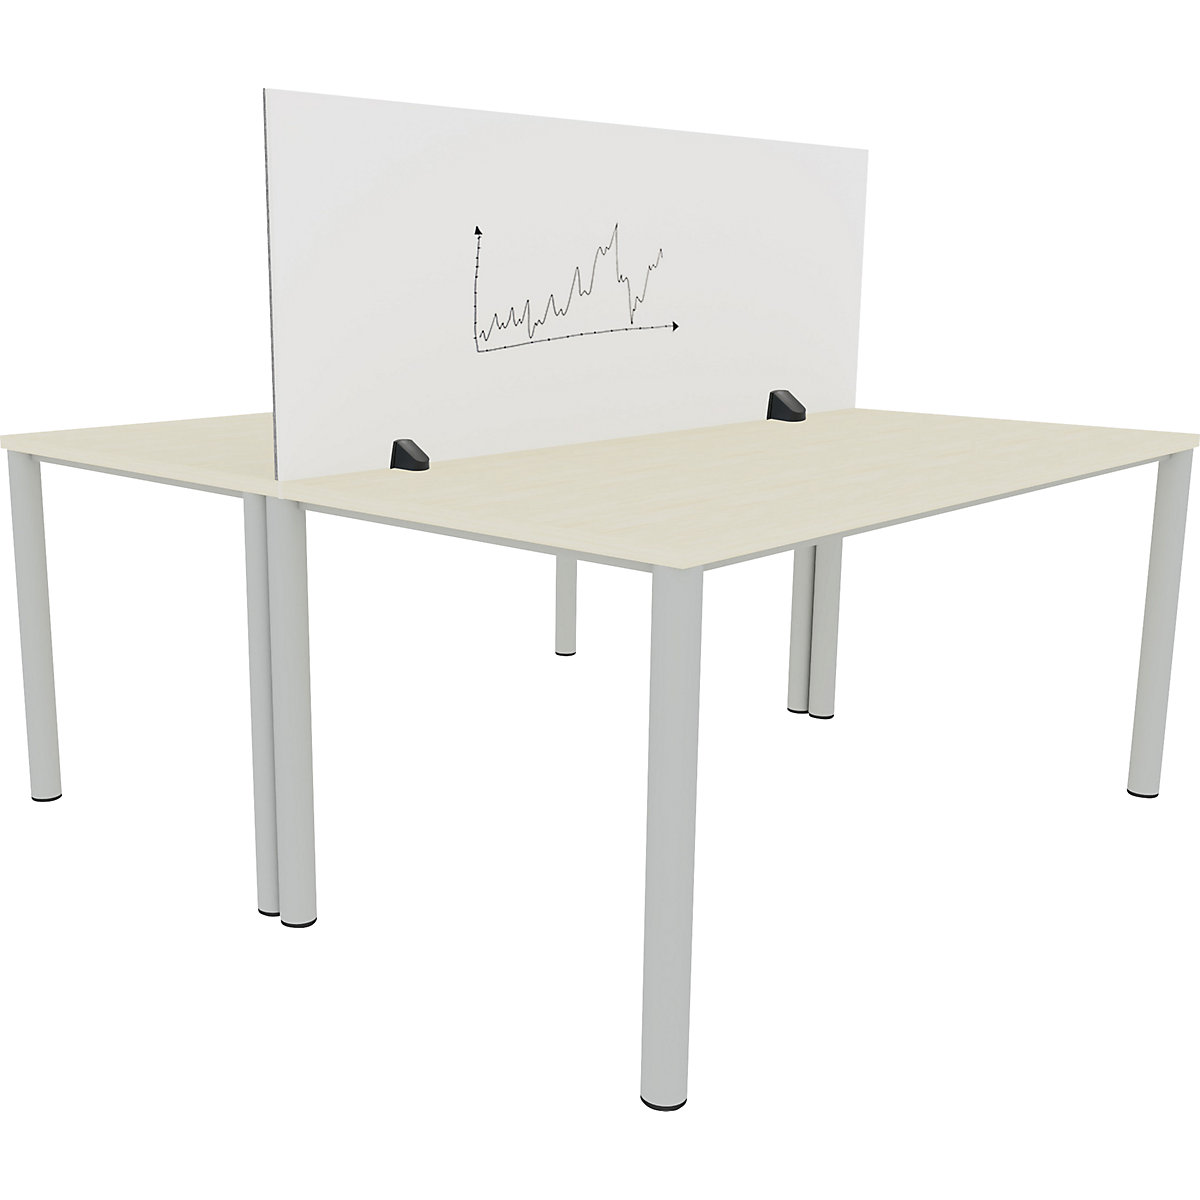 Tischtrennwand für Doppelarbeitsplatz, Emaille- und PET-Filz-Oberfläche, weiß / grau, Breite 1600 mm-5